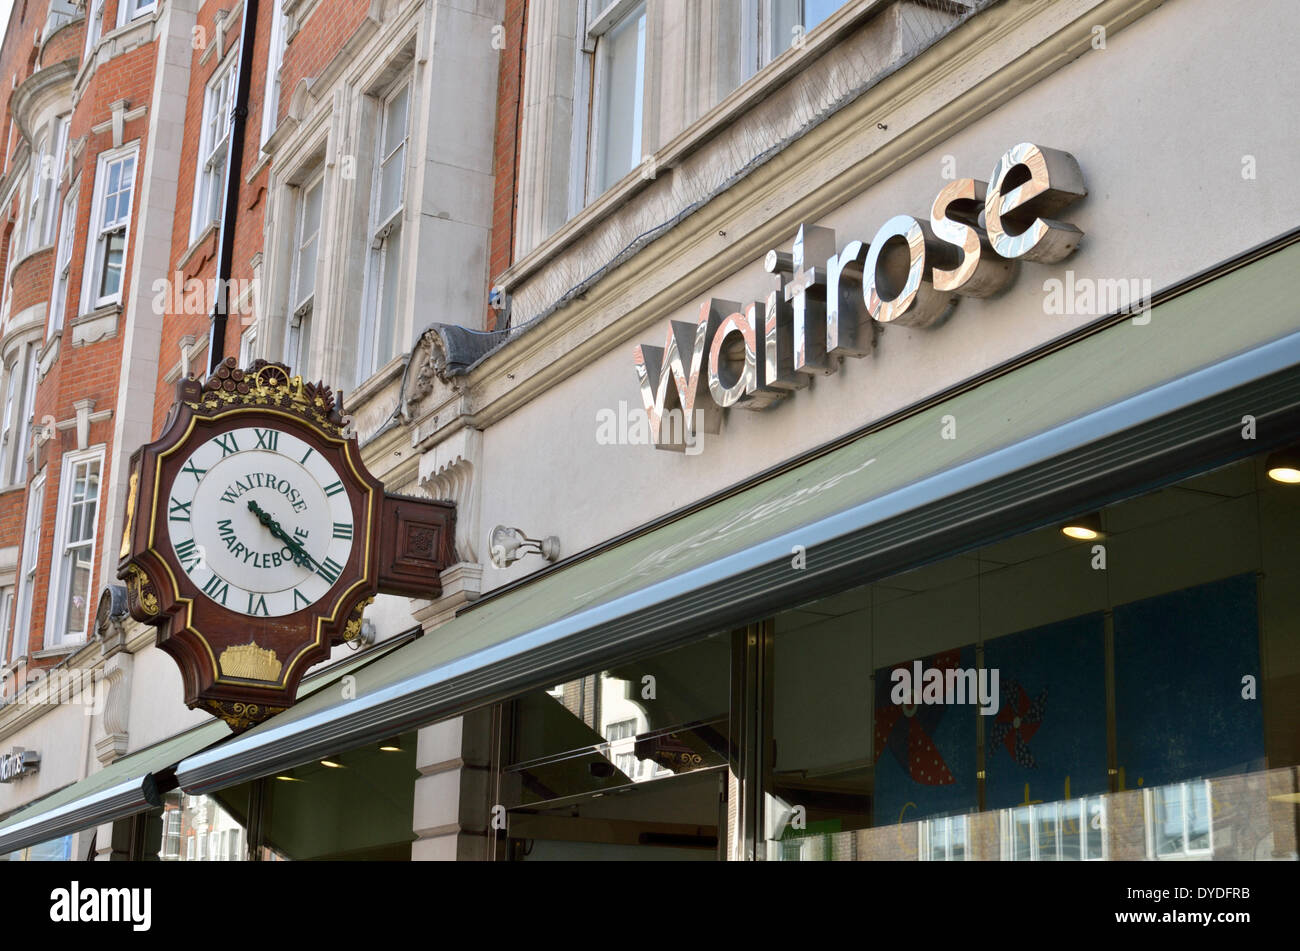 Supermarché Waitrose dans Marylebone High Street. Banque D'Images